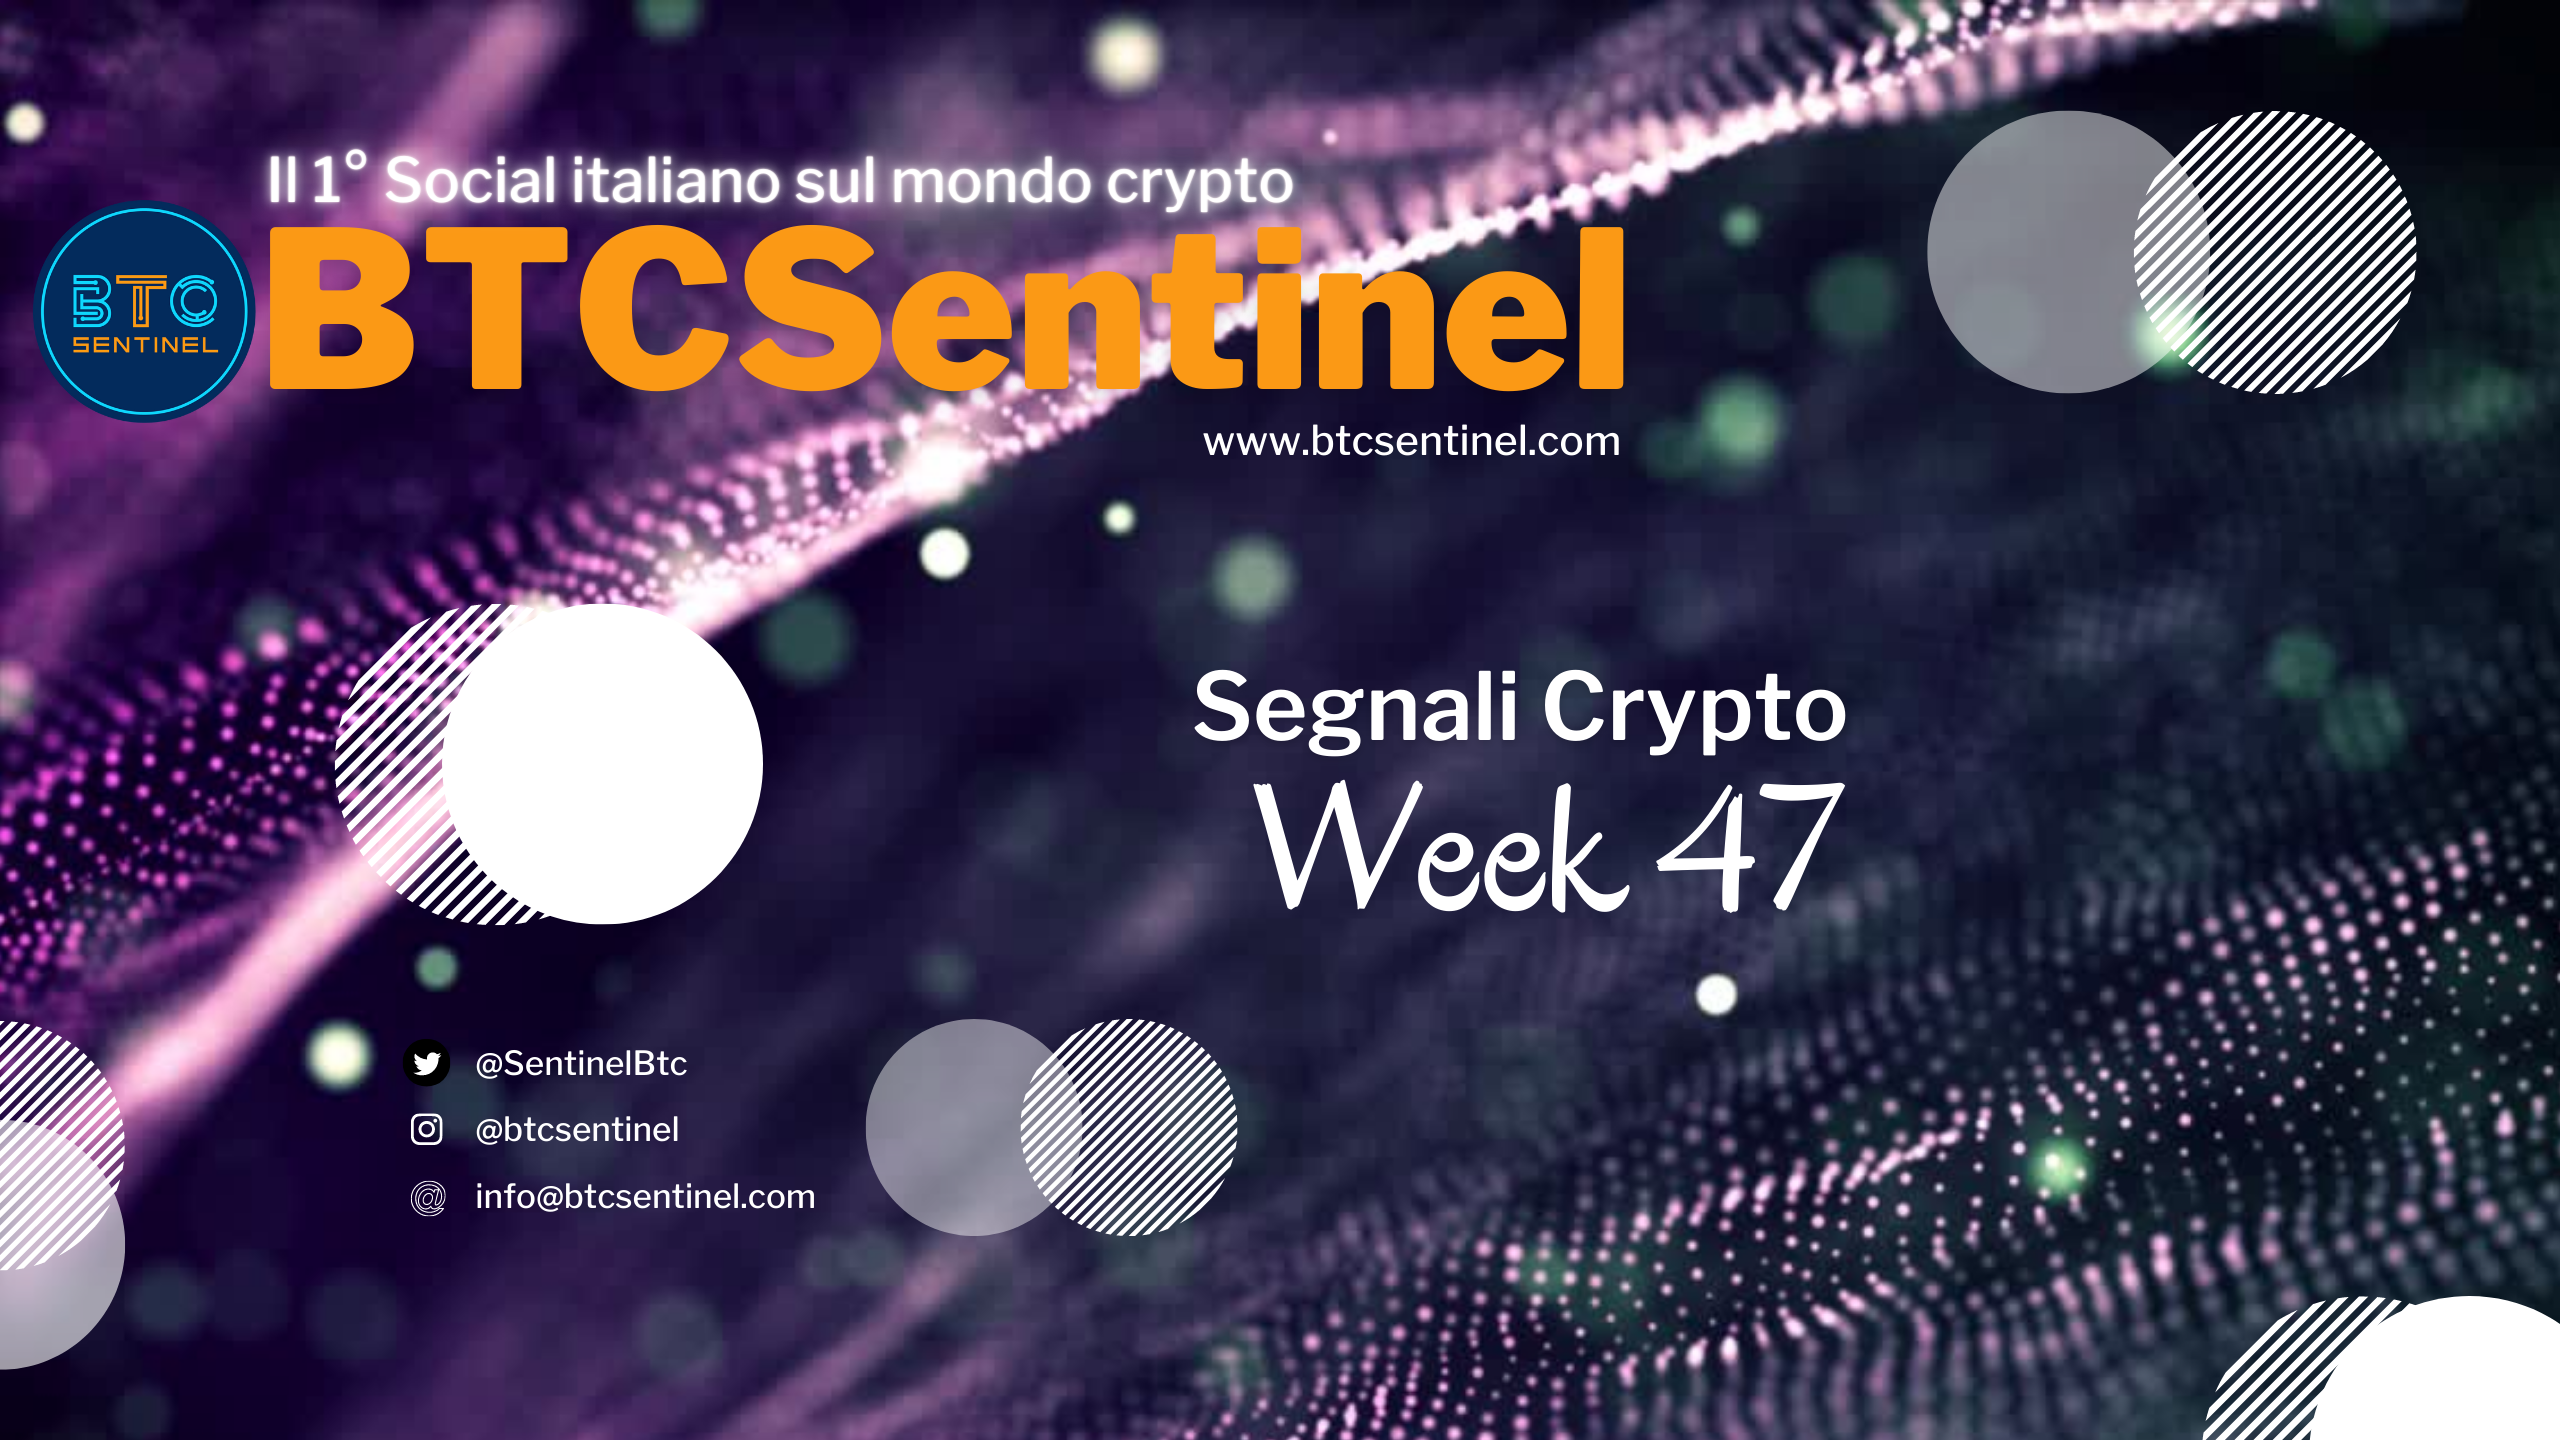 Segnali Crypto: Week 47 - News sul mondo criptovalute raccontate e spiegate dal Team di BTCSentinel.com, il 1° Social italiano sulle criptovalute